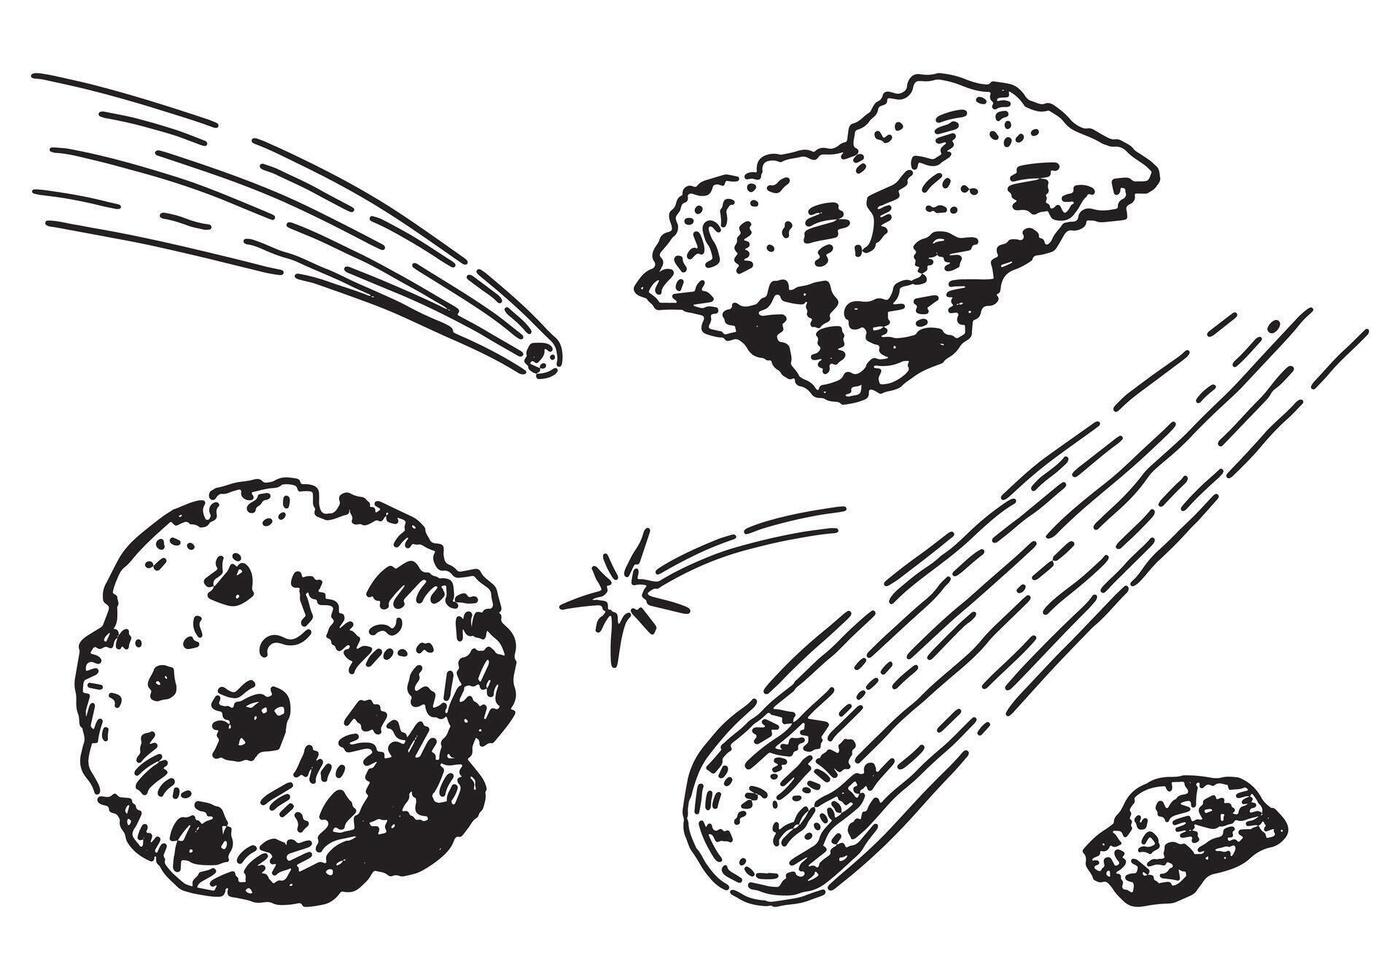 cósmico espacio garabatos colocar. contorno dibujos de meteorito, cometas, asteroides astronomía Ciencias bocetos mano dibujado vector ilustración aislado en blanco.